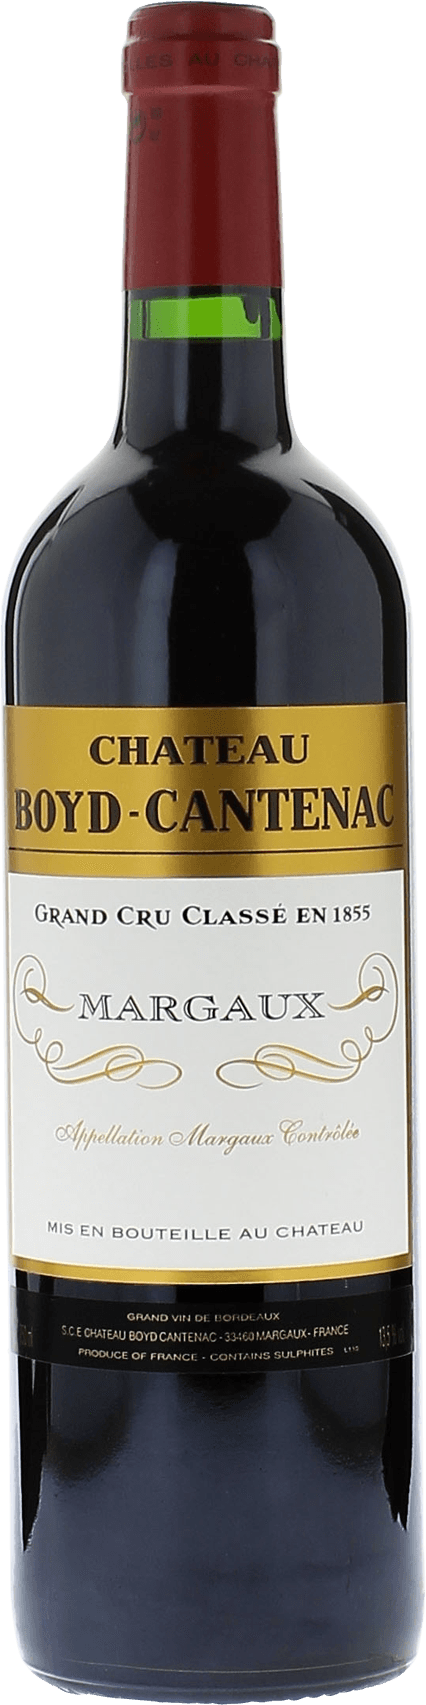 Boyd cantenac 2005 2me Grand cru class Margaux, Bordeaux rouge